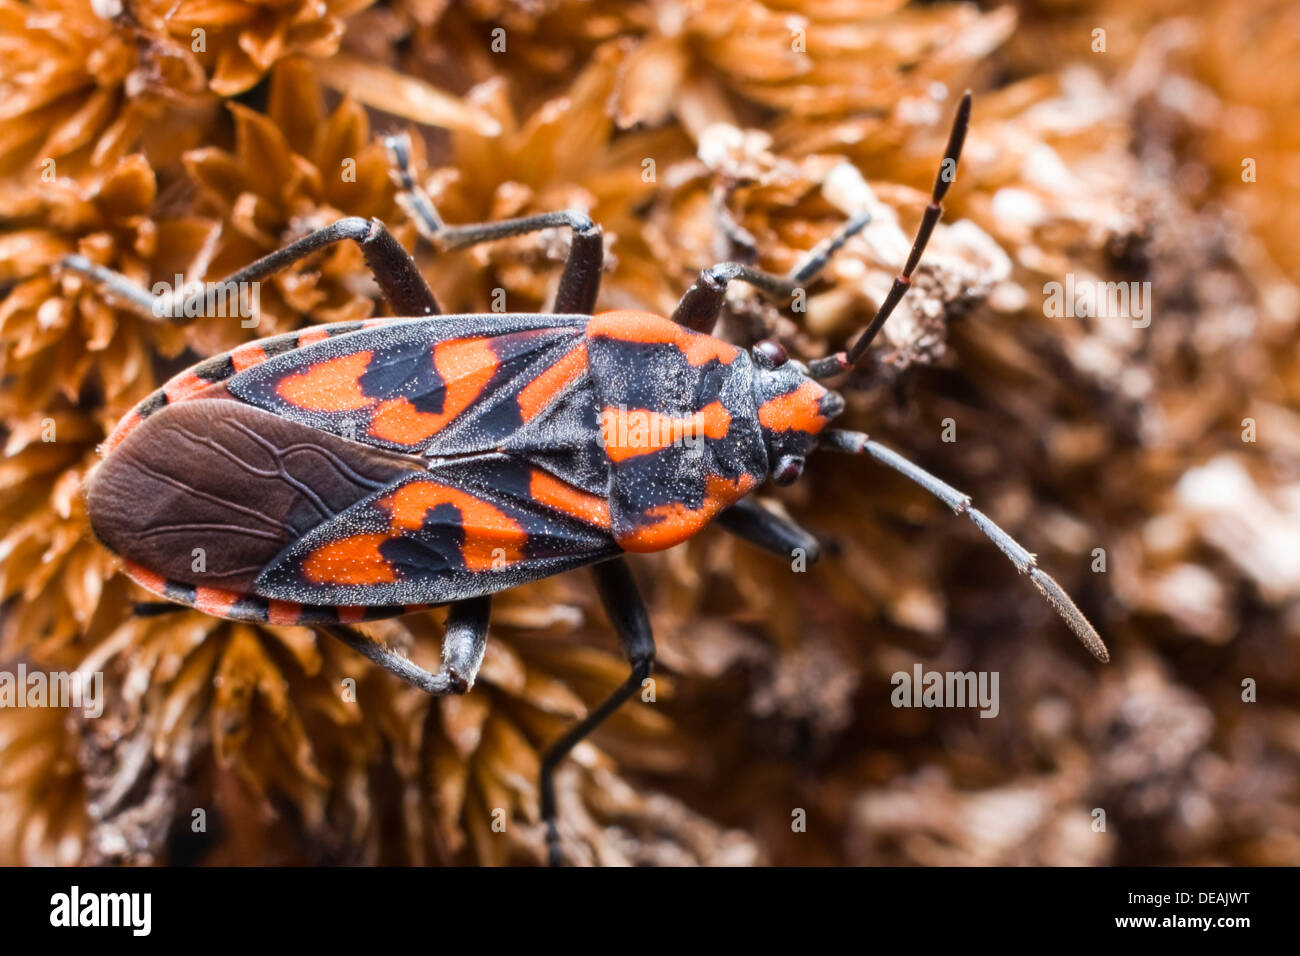 Cretan Soldier Beetle (Spilostethus saxatilis) Stock Photo